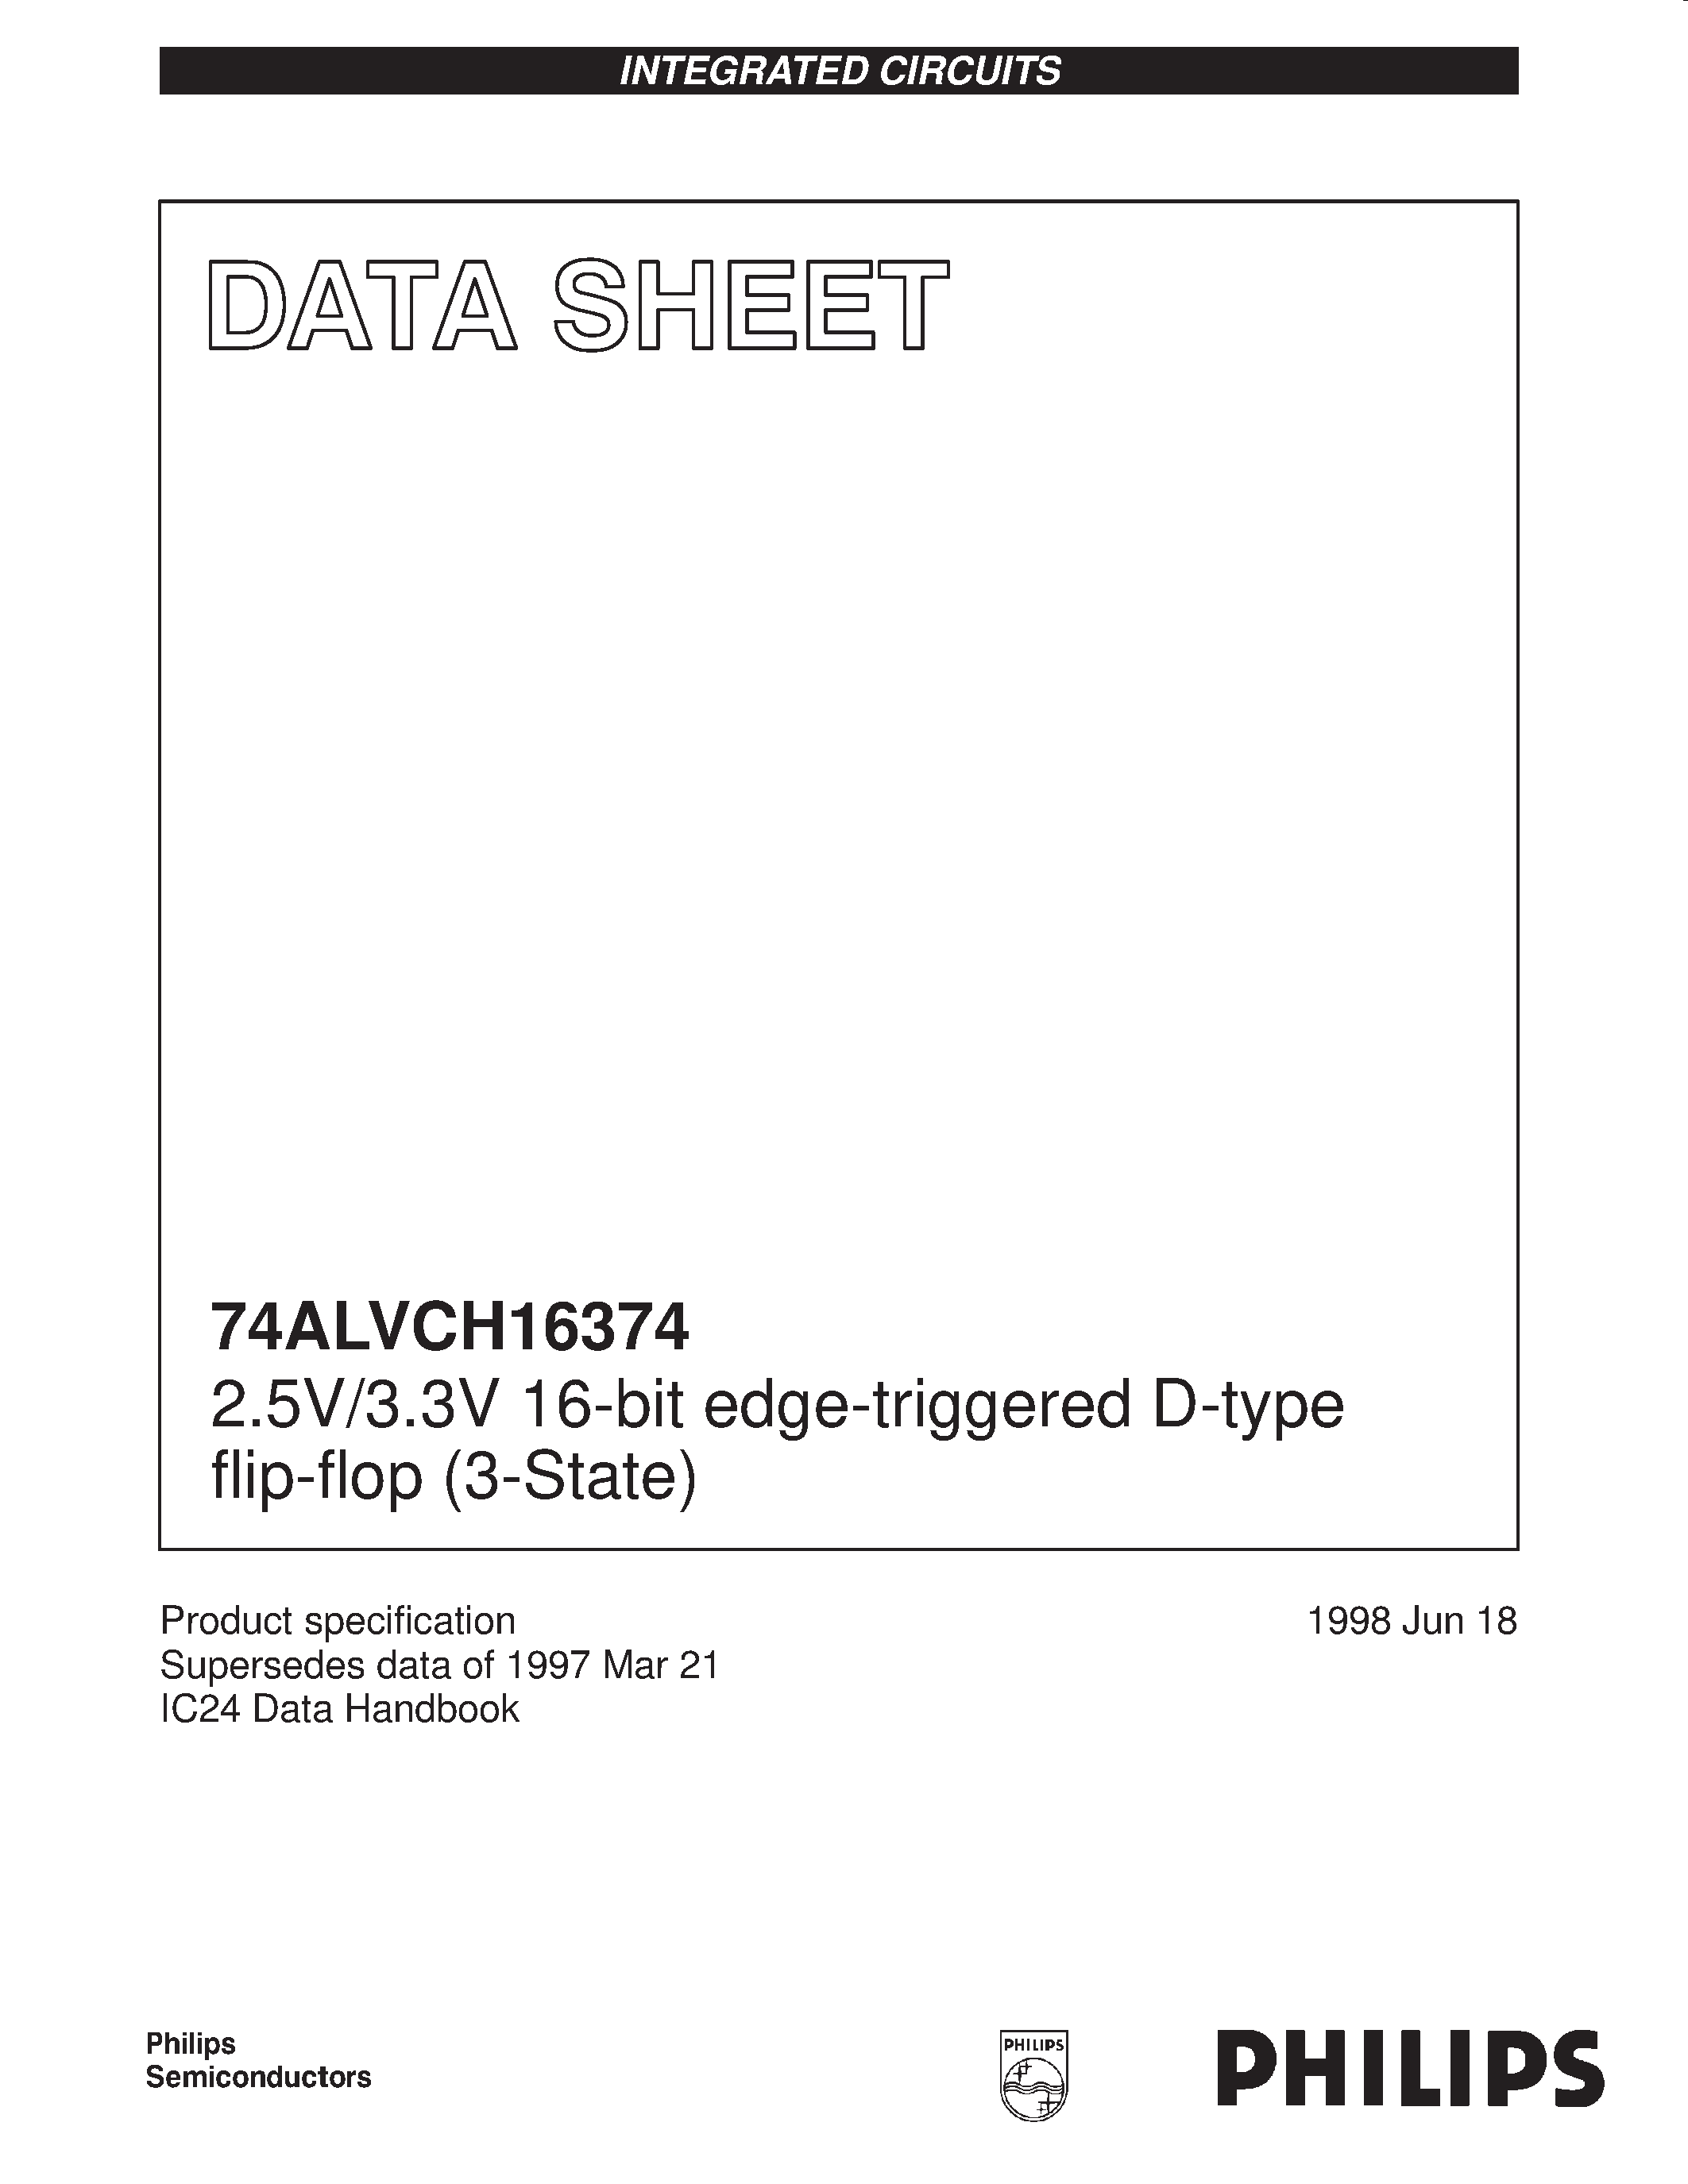 Даташит 74ALVCH16374DL - 2.5V/3.3V 16-bit edge-triggered D-type flip-flop 3-State страница 1